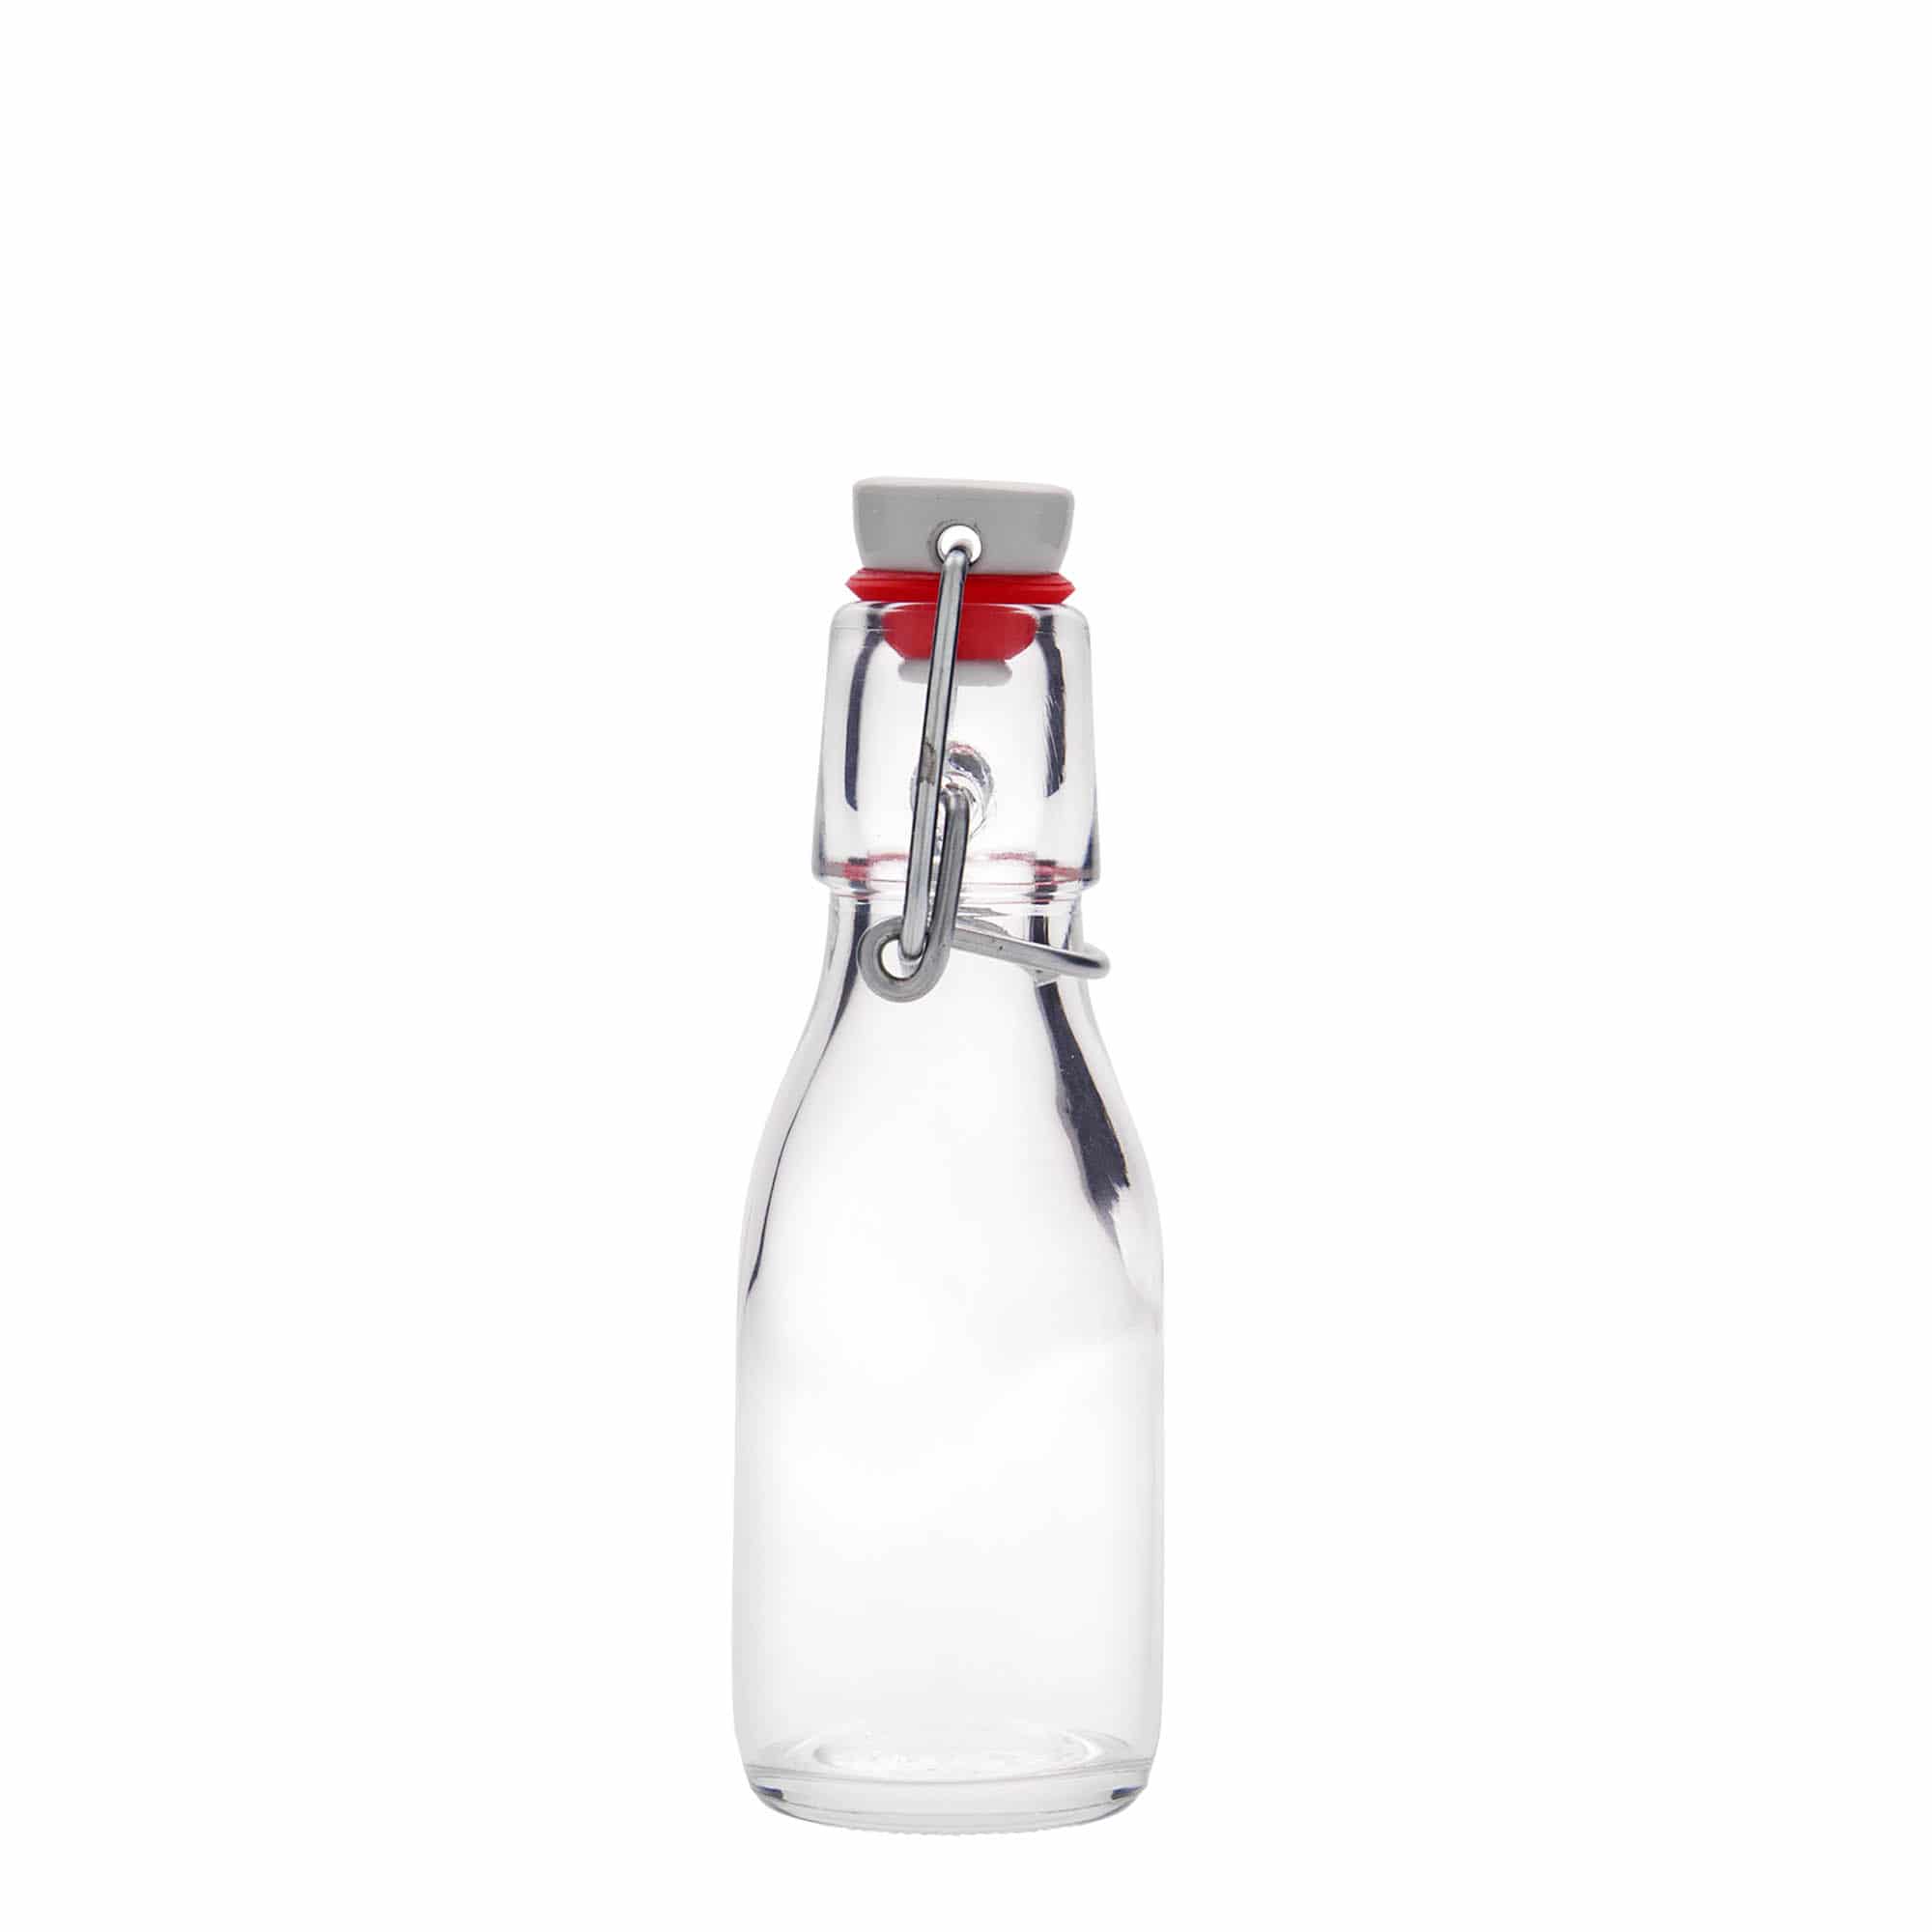 100 ml glass bottle 'Paul', closure: swing top